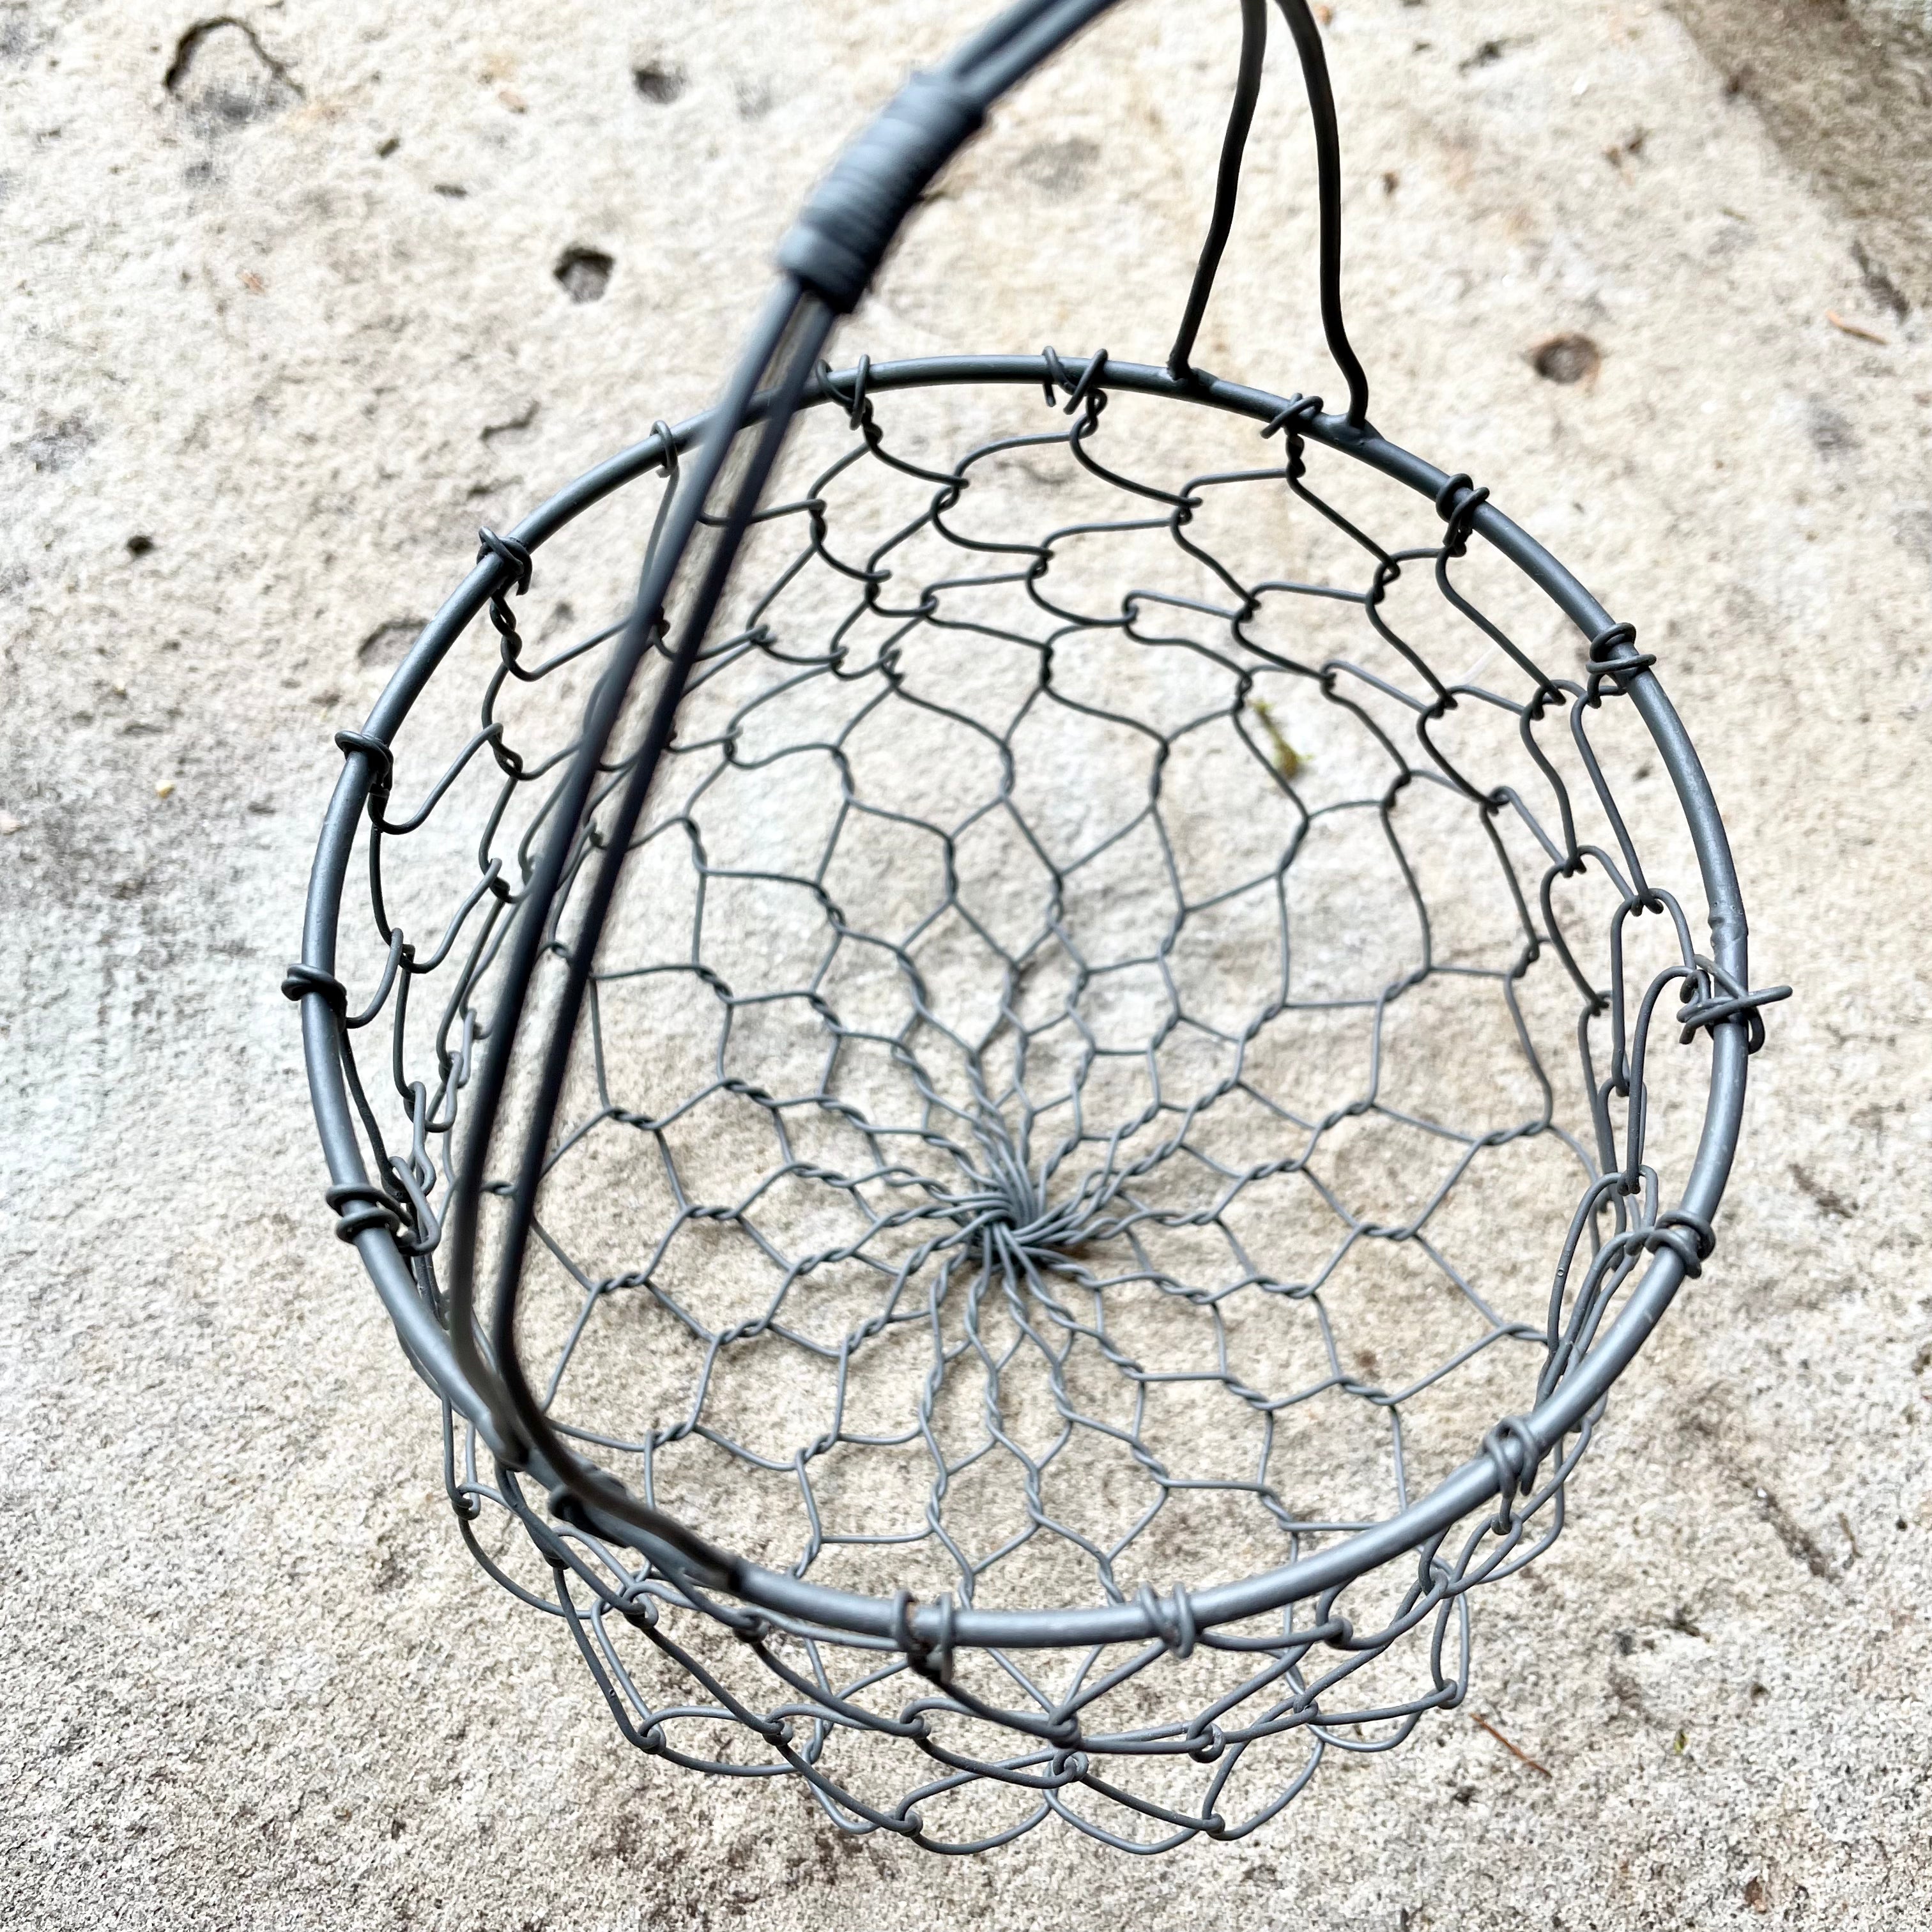 Small Round Wire Basket